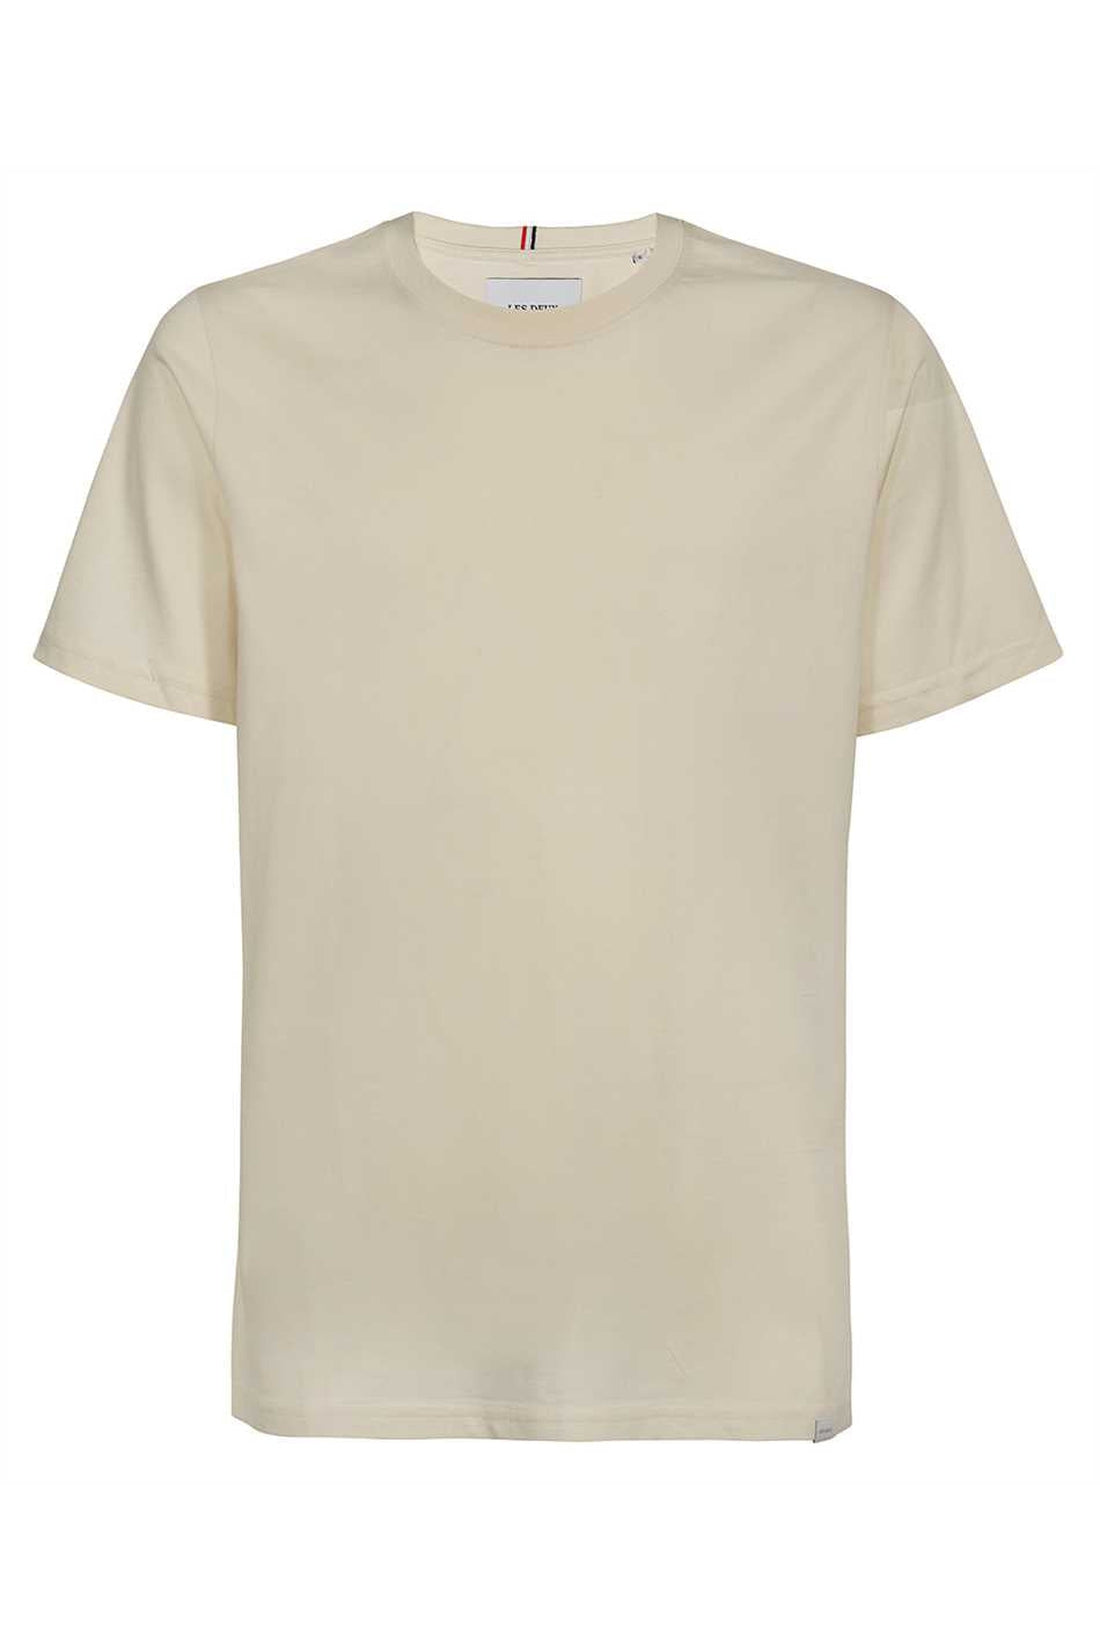 Les Deux-OUTLET-SALE-Cotton crew-neck T-shirt-ARCHIVIST